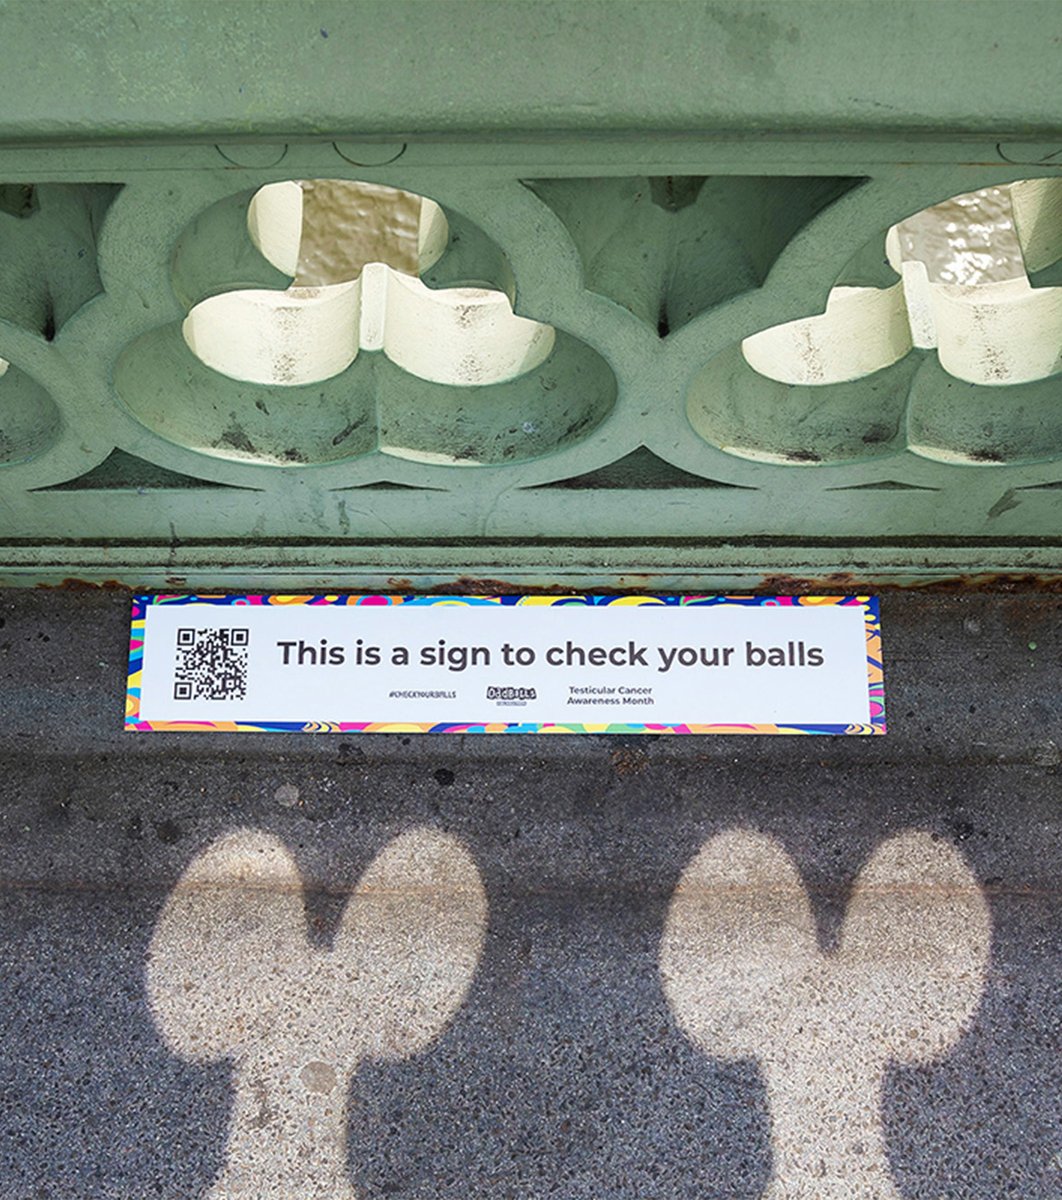 À Londres, la Fondation Oddballs a détourné le pont de Westminster et ses ombres suggestives pour sensibiliser au cancer des testicules Plus d’infos : creapills.link/aoz